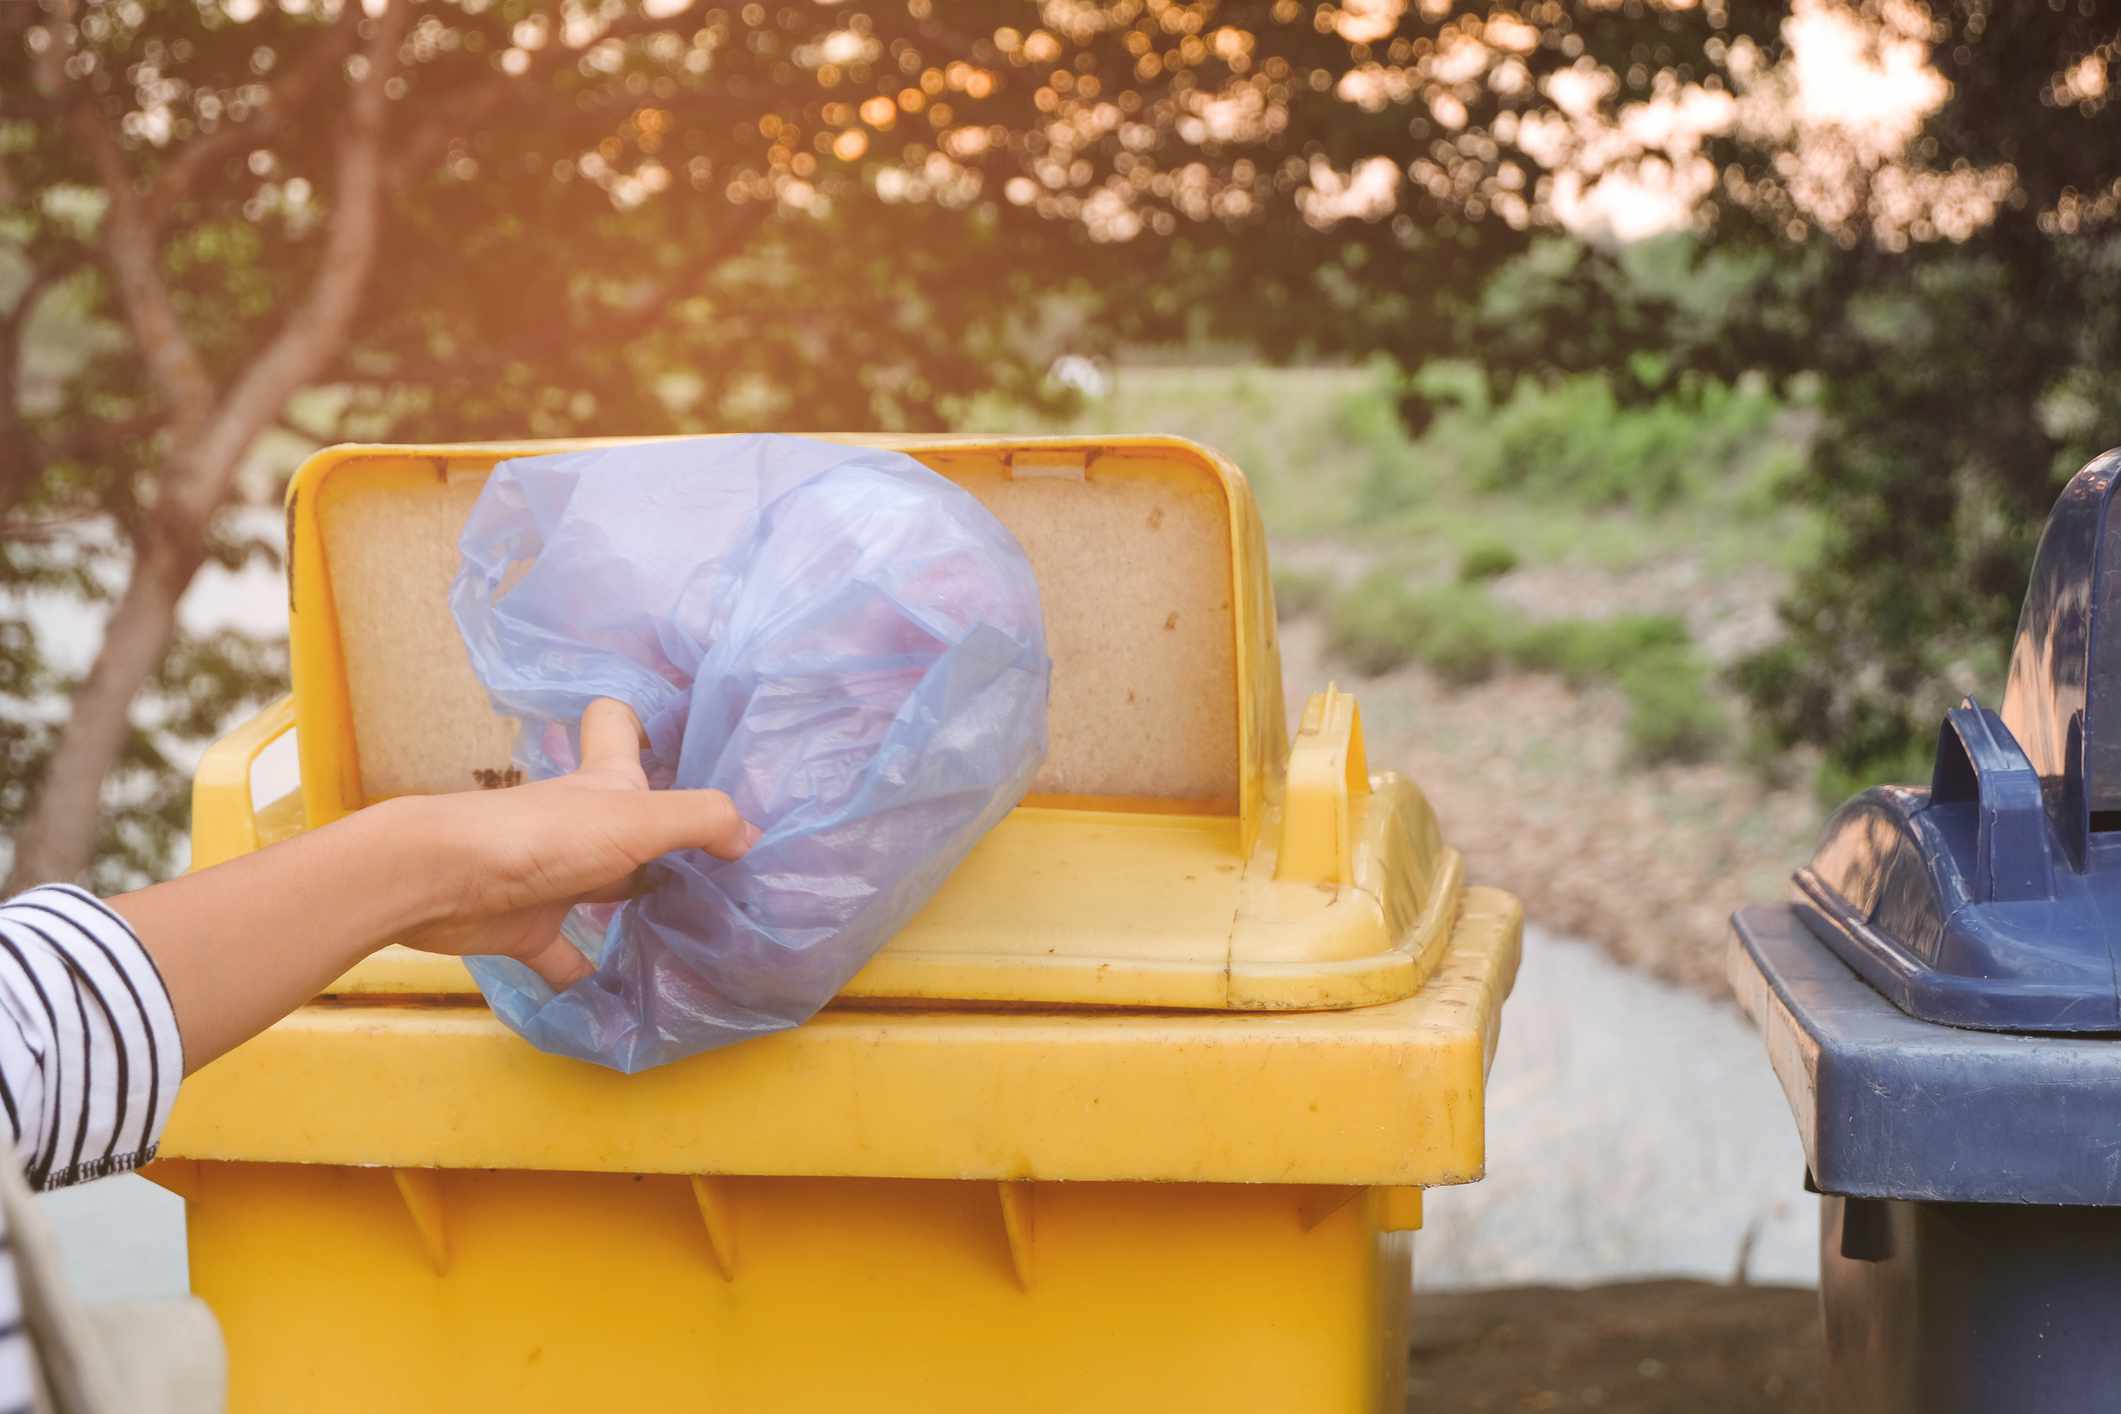 Persona tirando bolsas de plástico en un contenedor amarillo